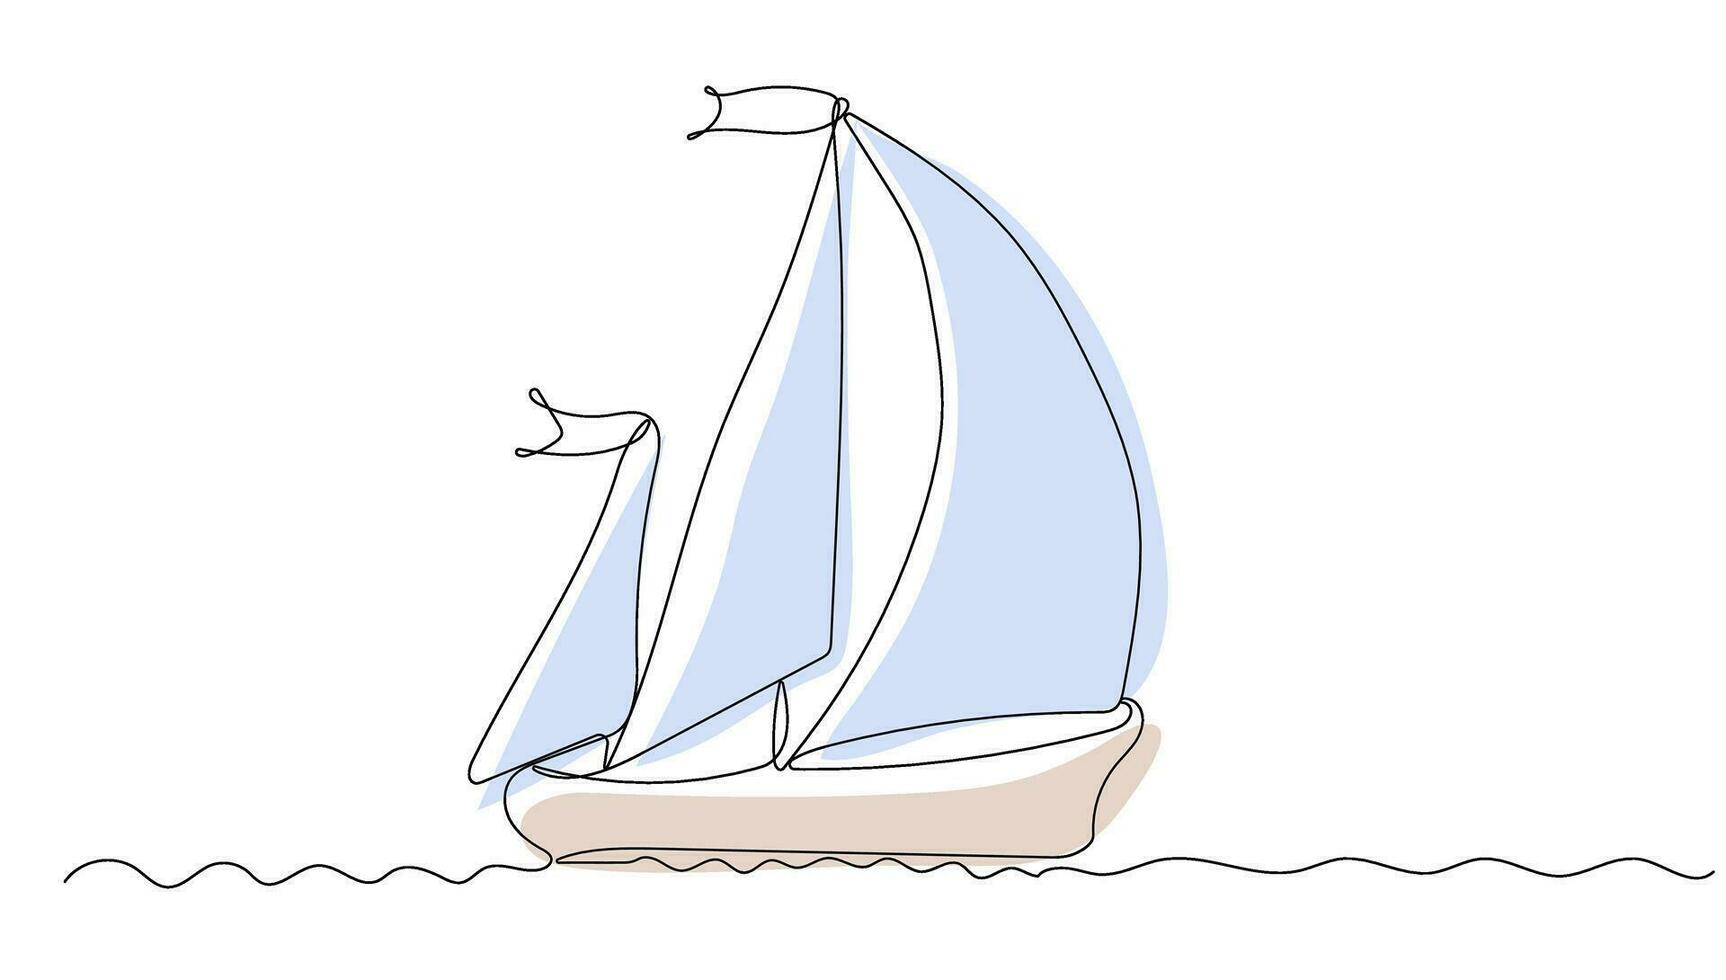 kontinuerlig ett linje teckning av fiske båt vektor